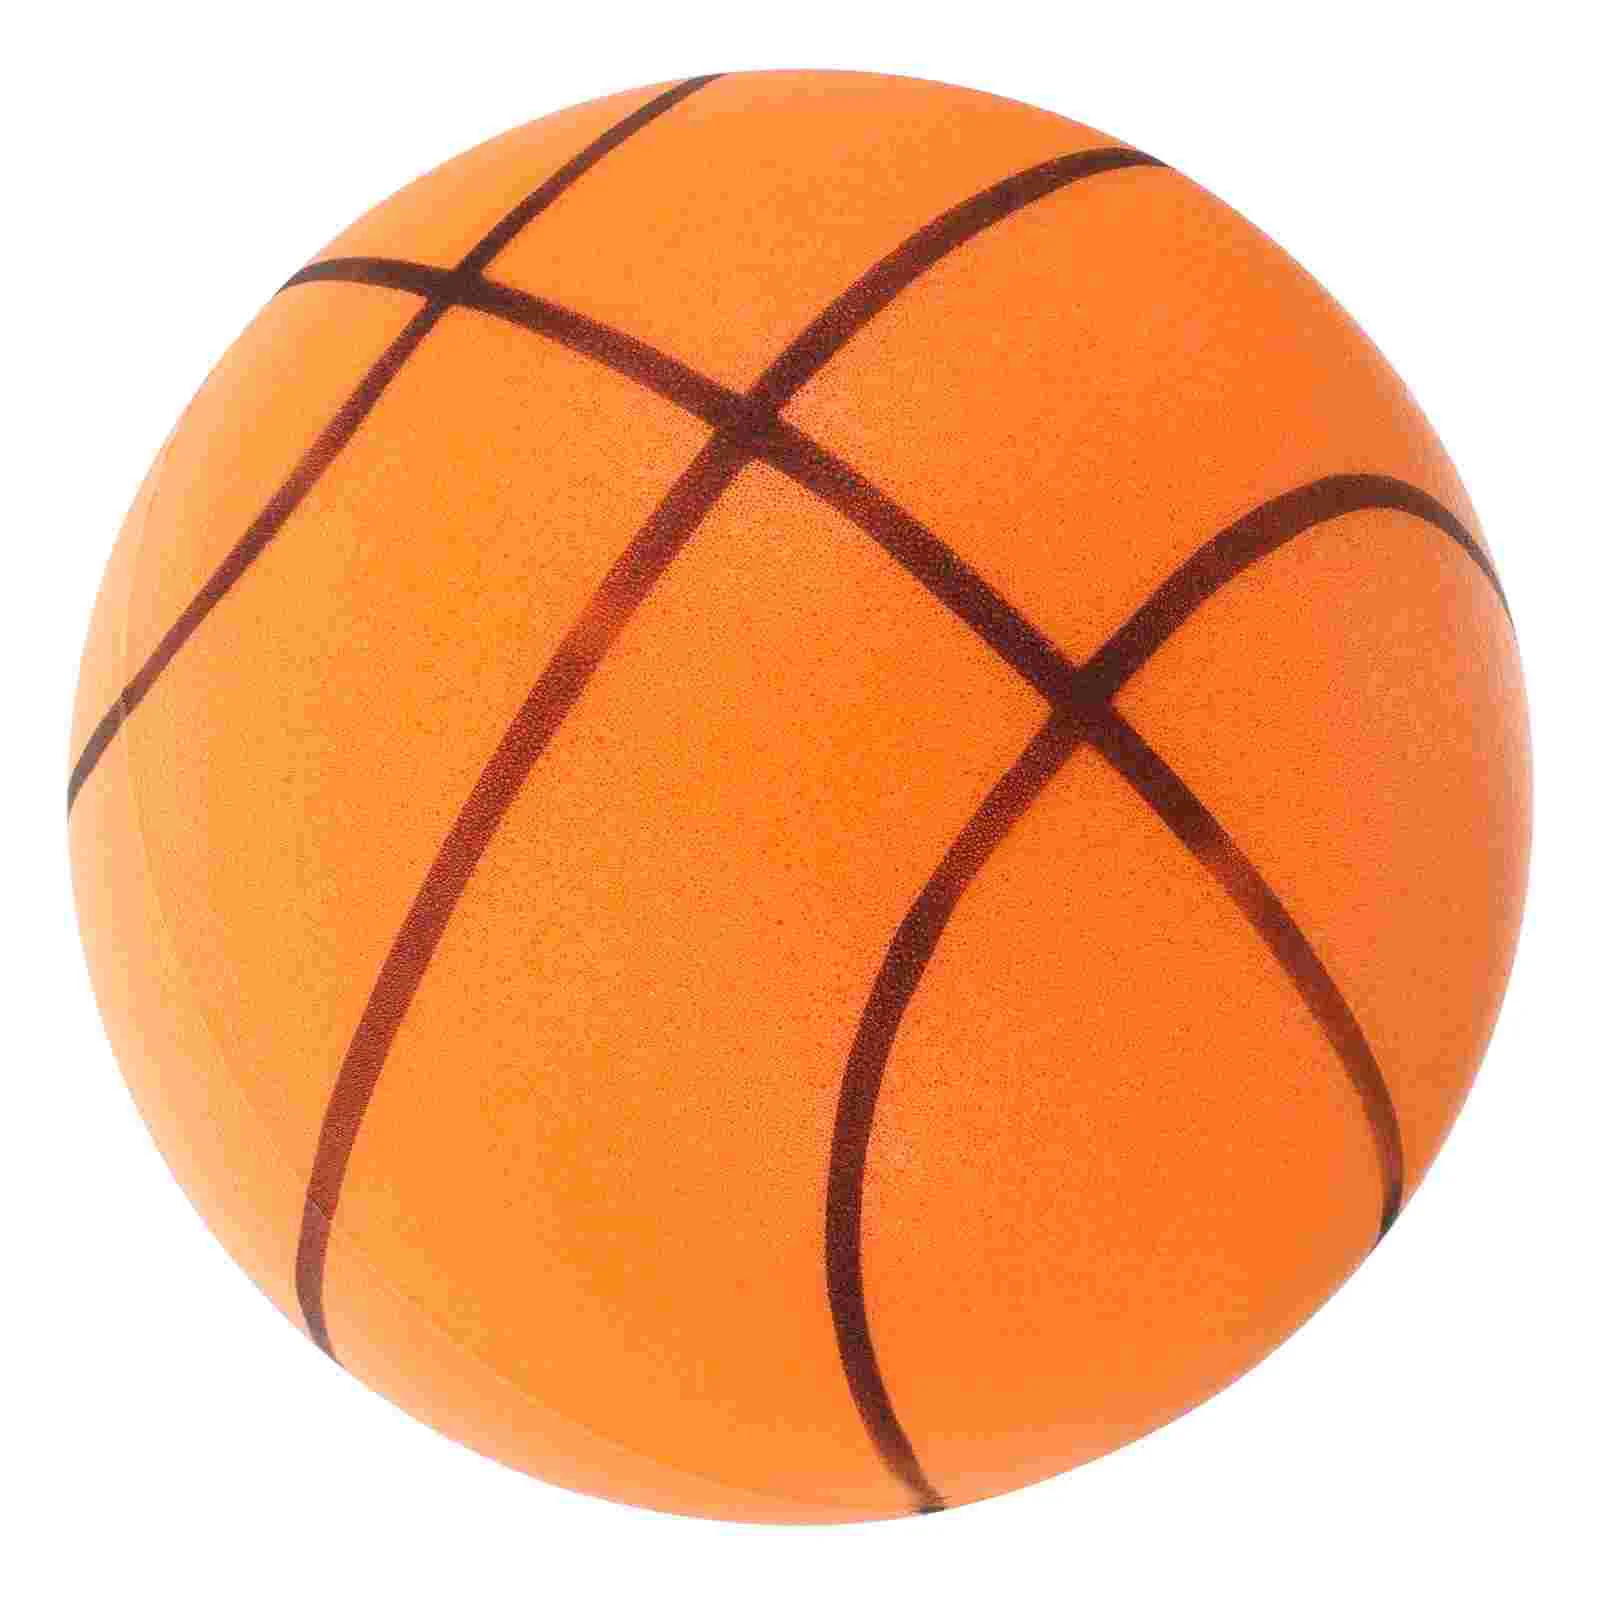 

Тихий прыгающий мяч, маленький надувной мяч, практичный бесшумный прыгающий мяч, легкий баскетбольный мяч для помещений